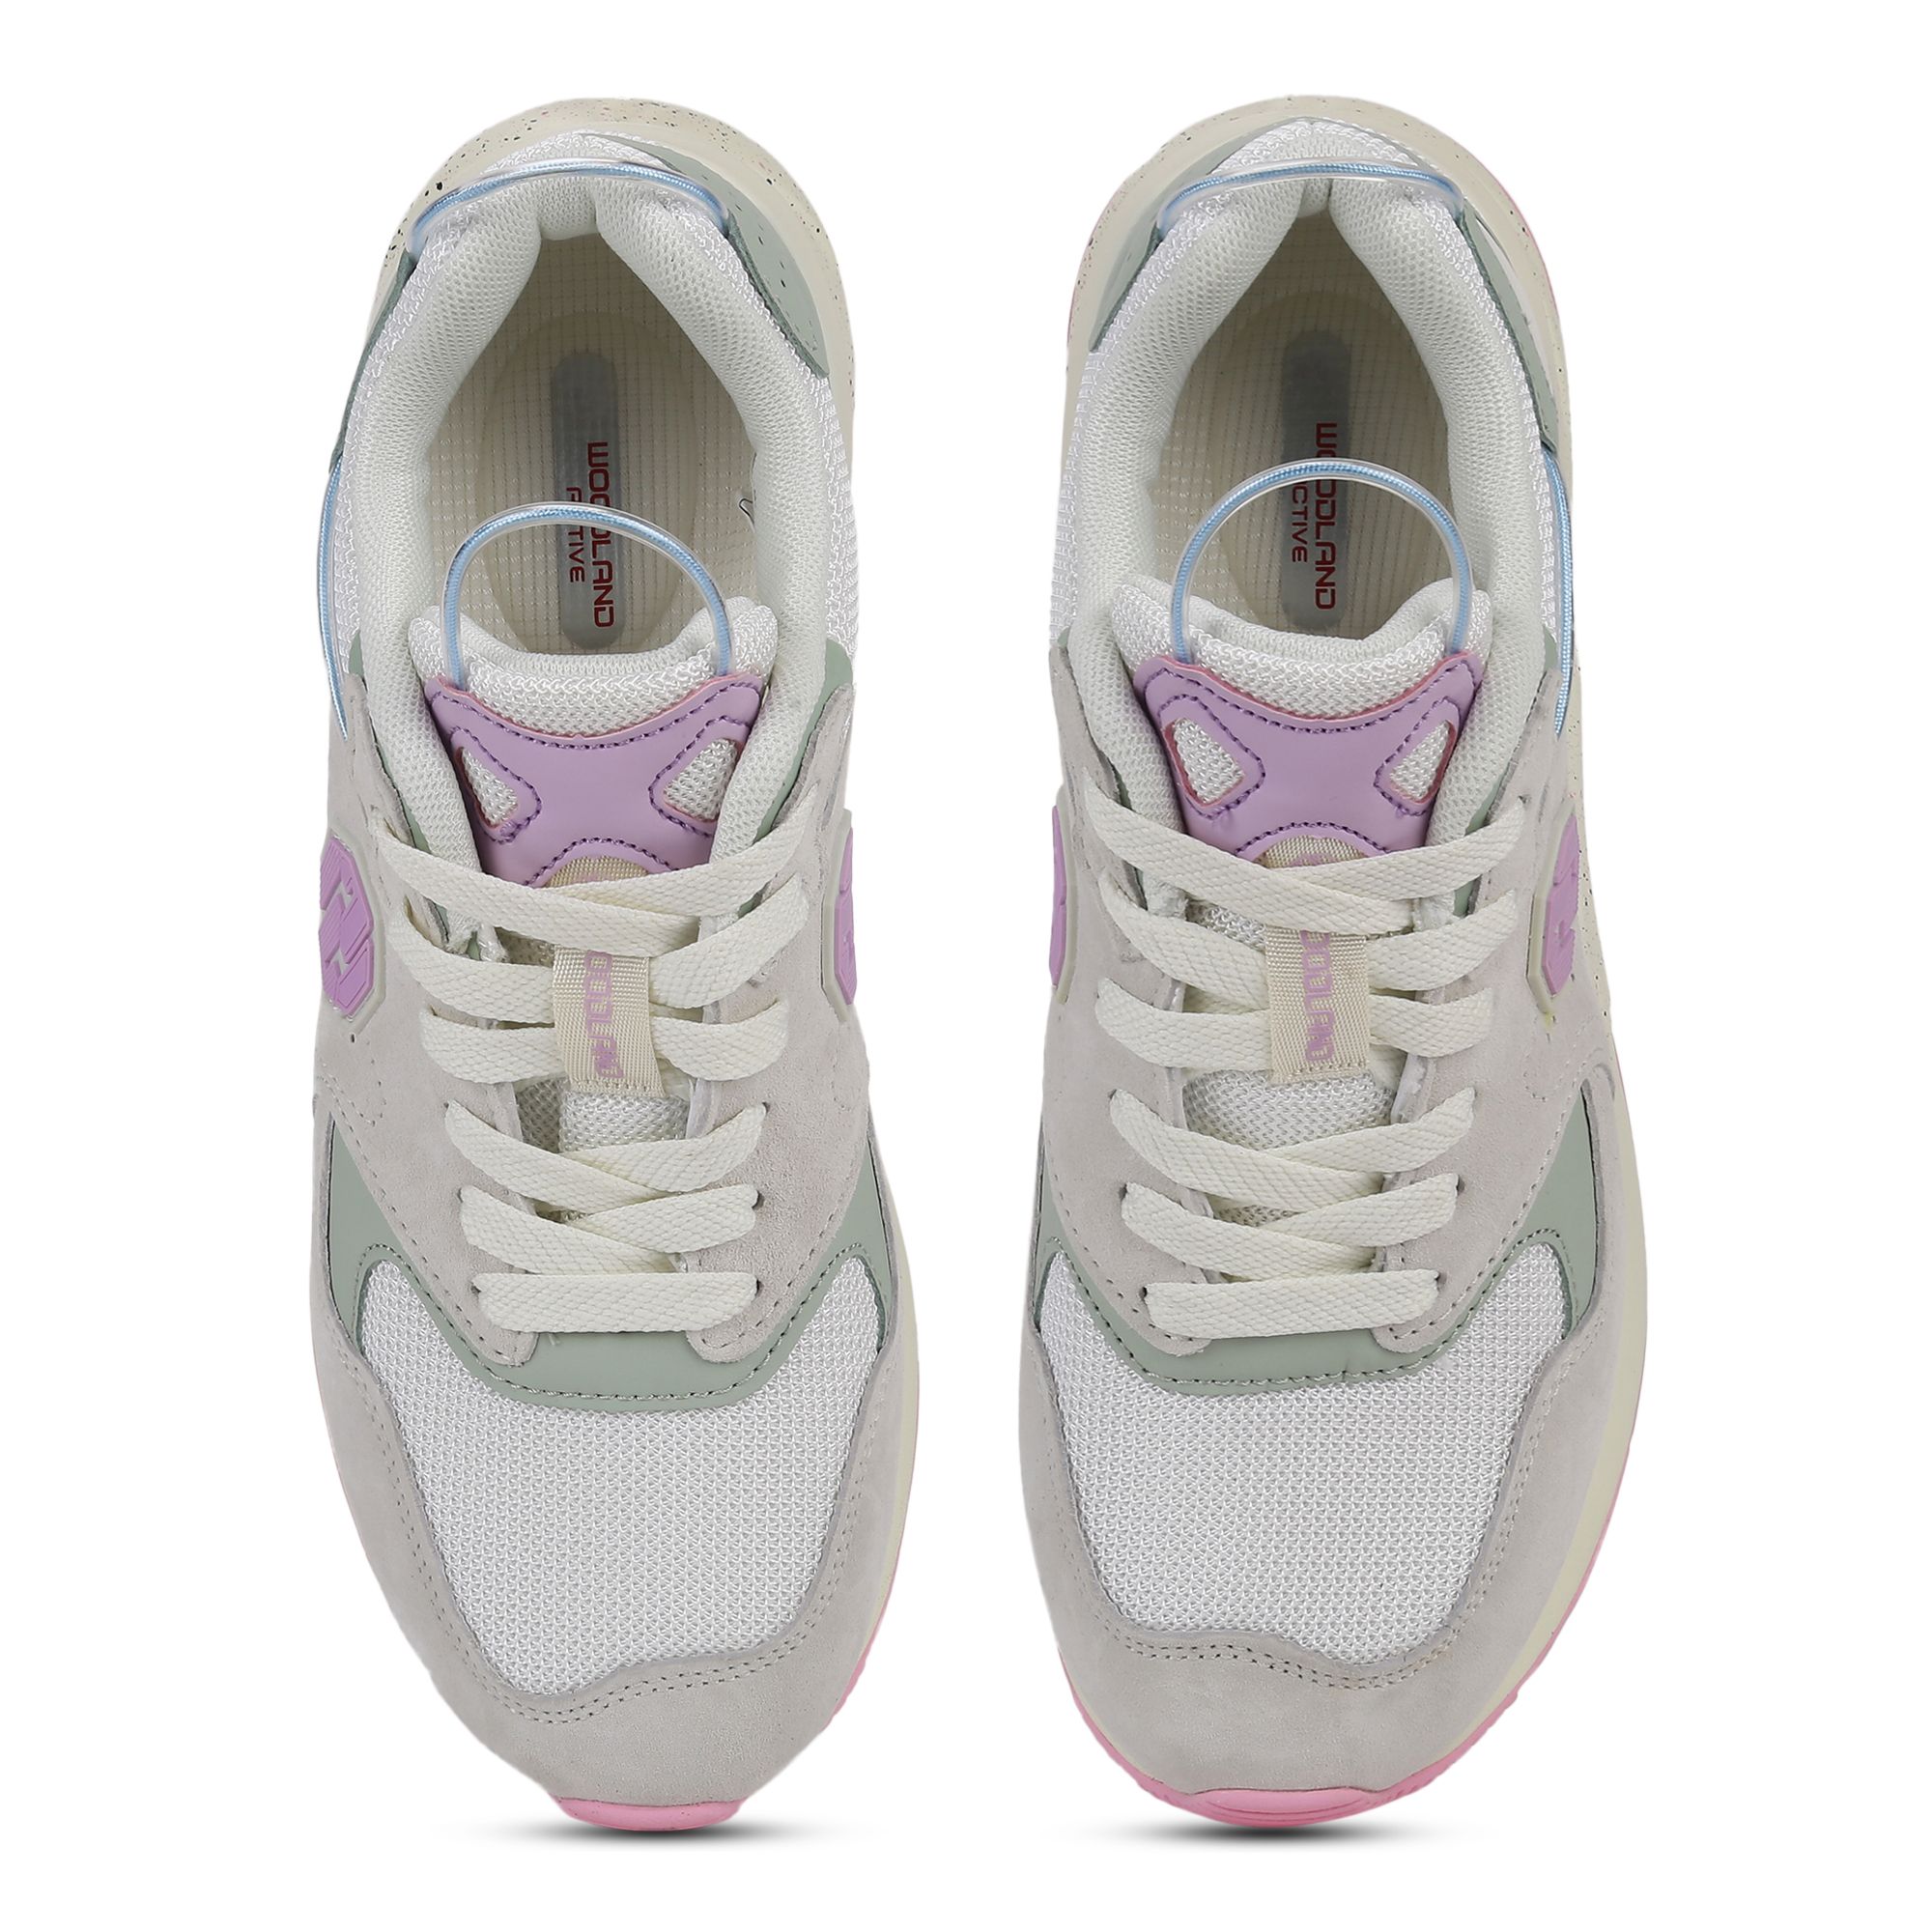 Beige/Purple Sneakers for Women